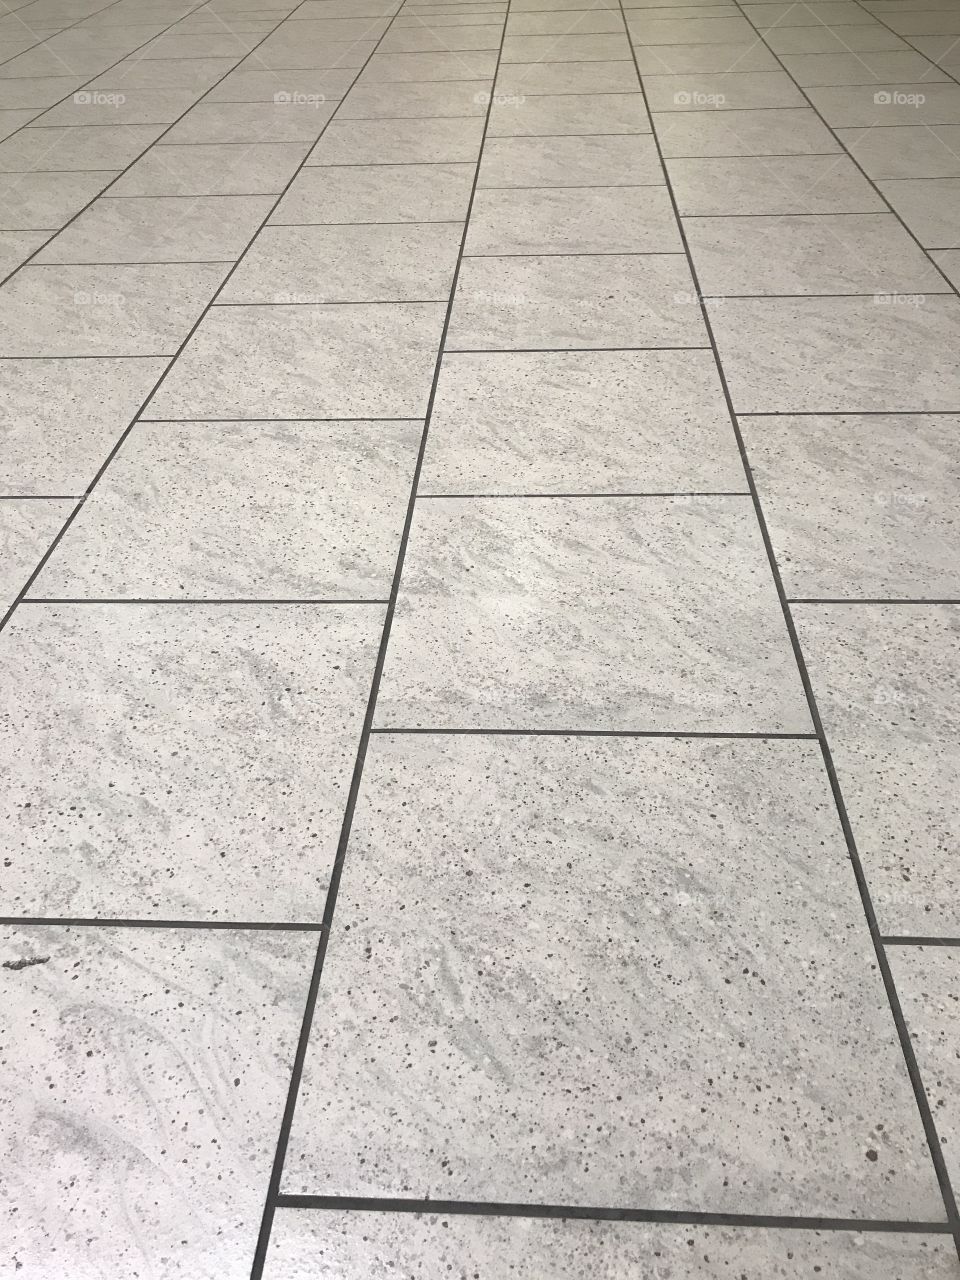 Plenty of tiles